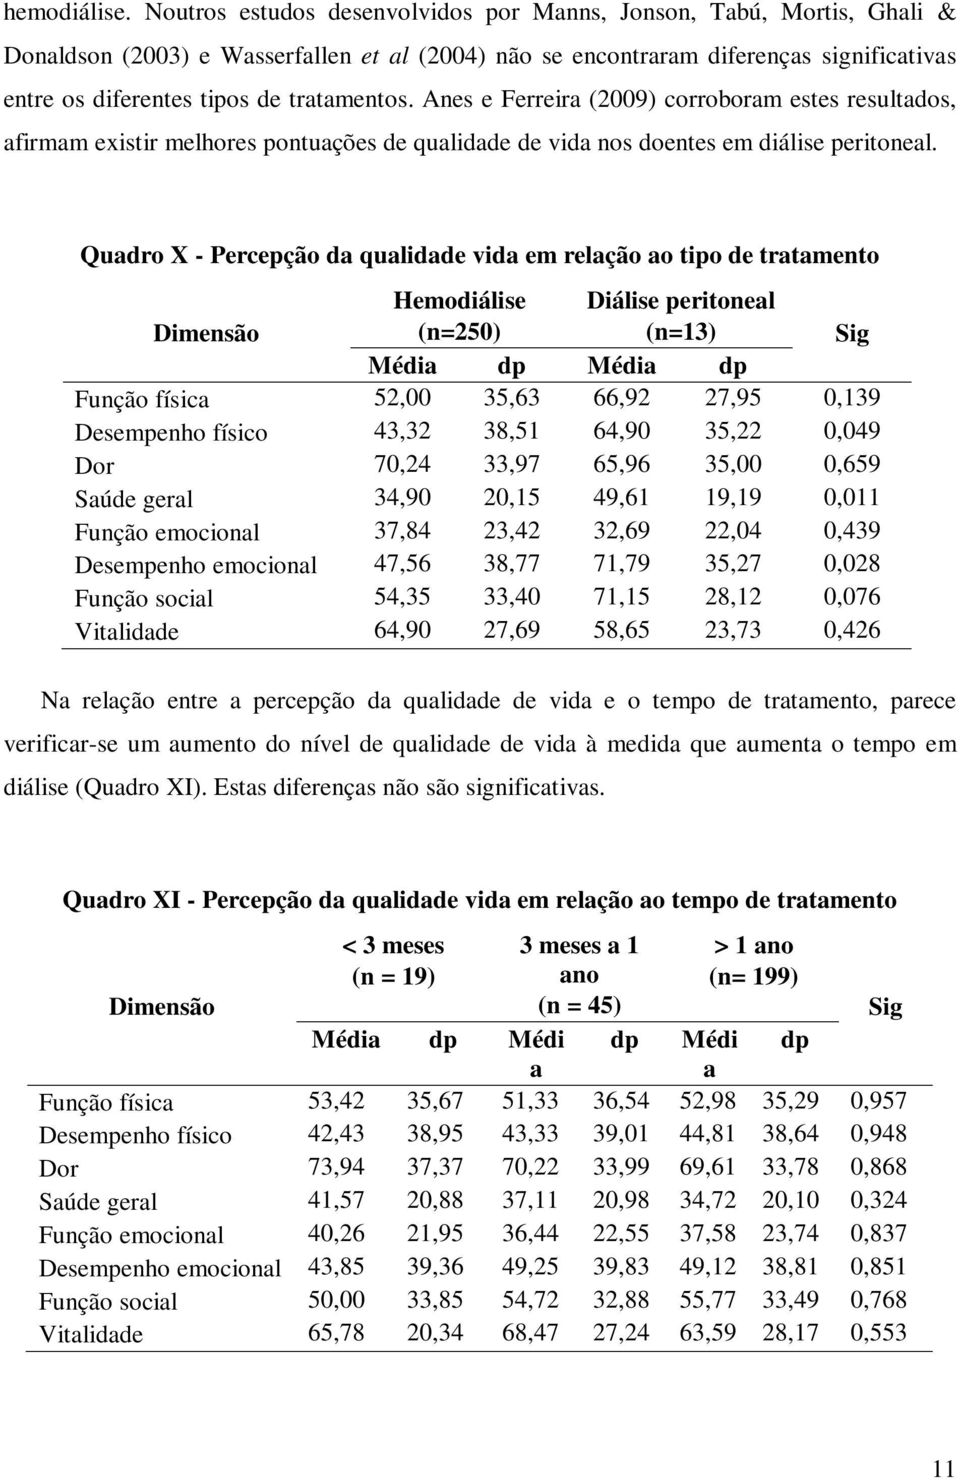 Anes e Ferreir (2009) corroborm estes resultdos, firmm existir melhores pontuções de qulidde de vid nos doentes em diálise peritonel.